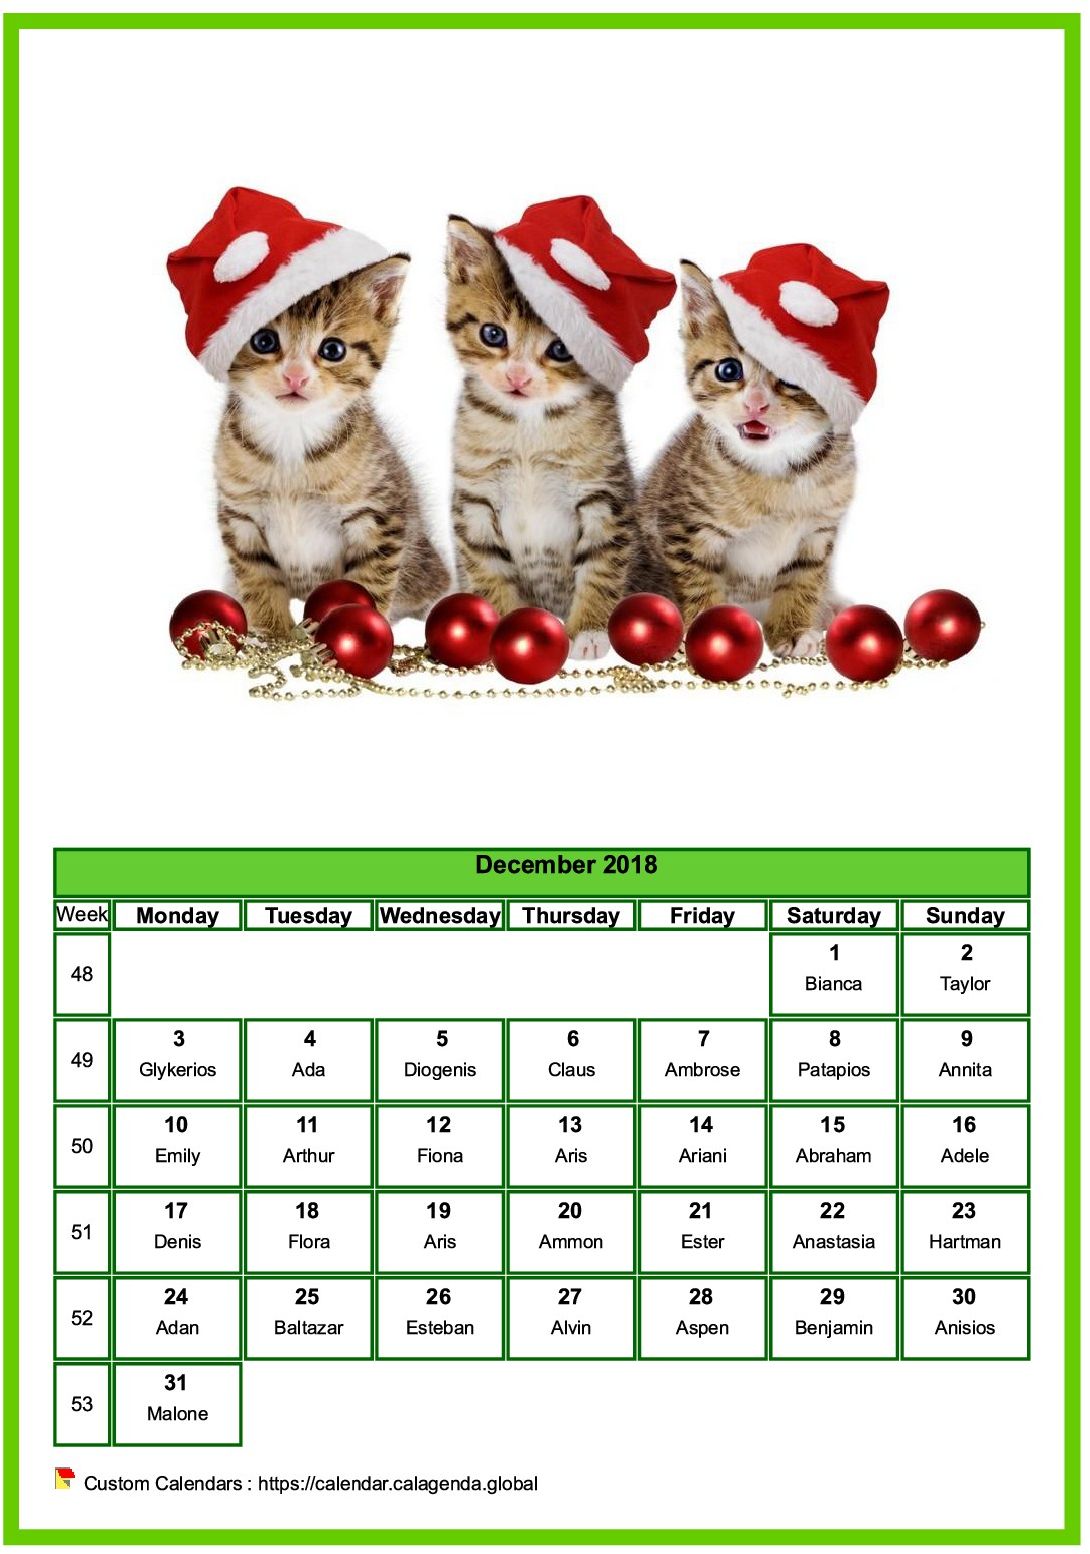 Calendar December 2018 cats